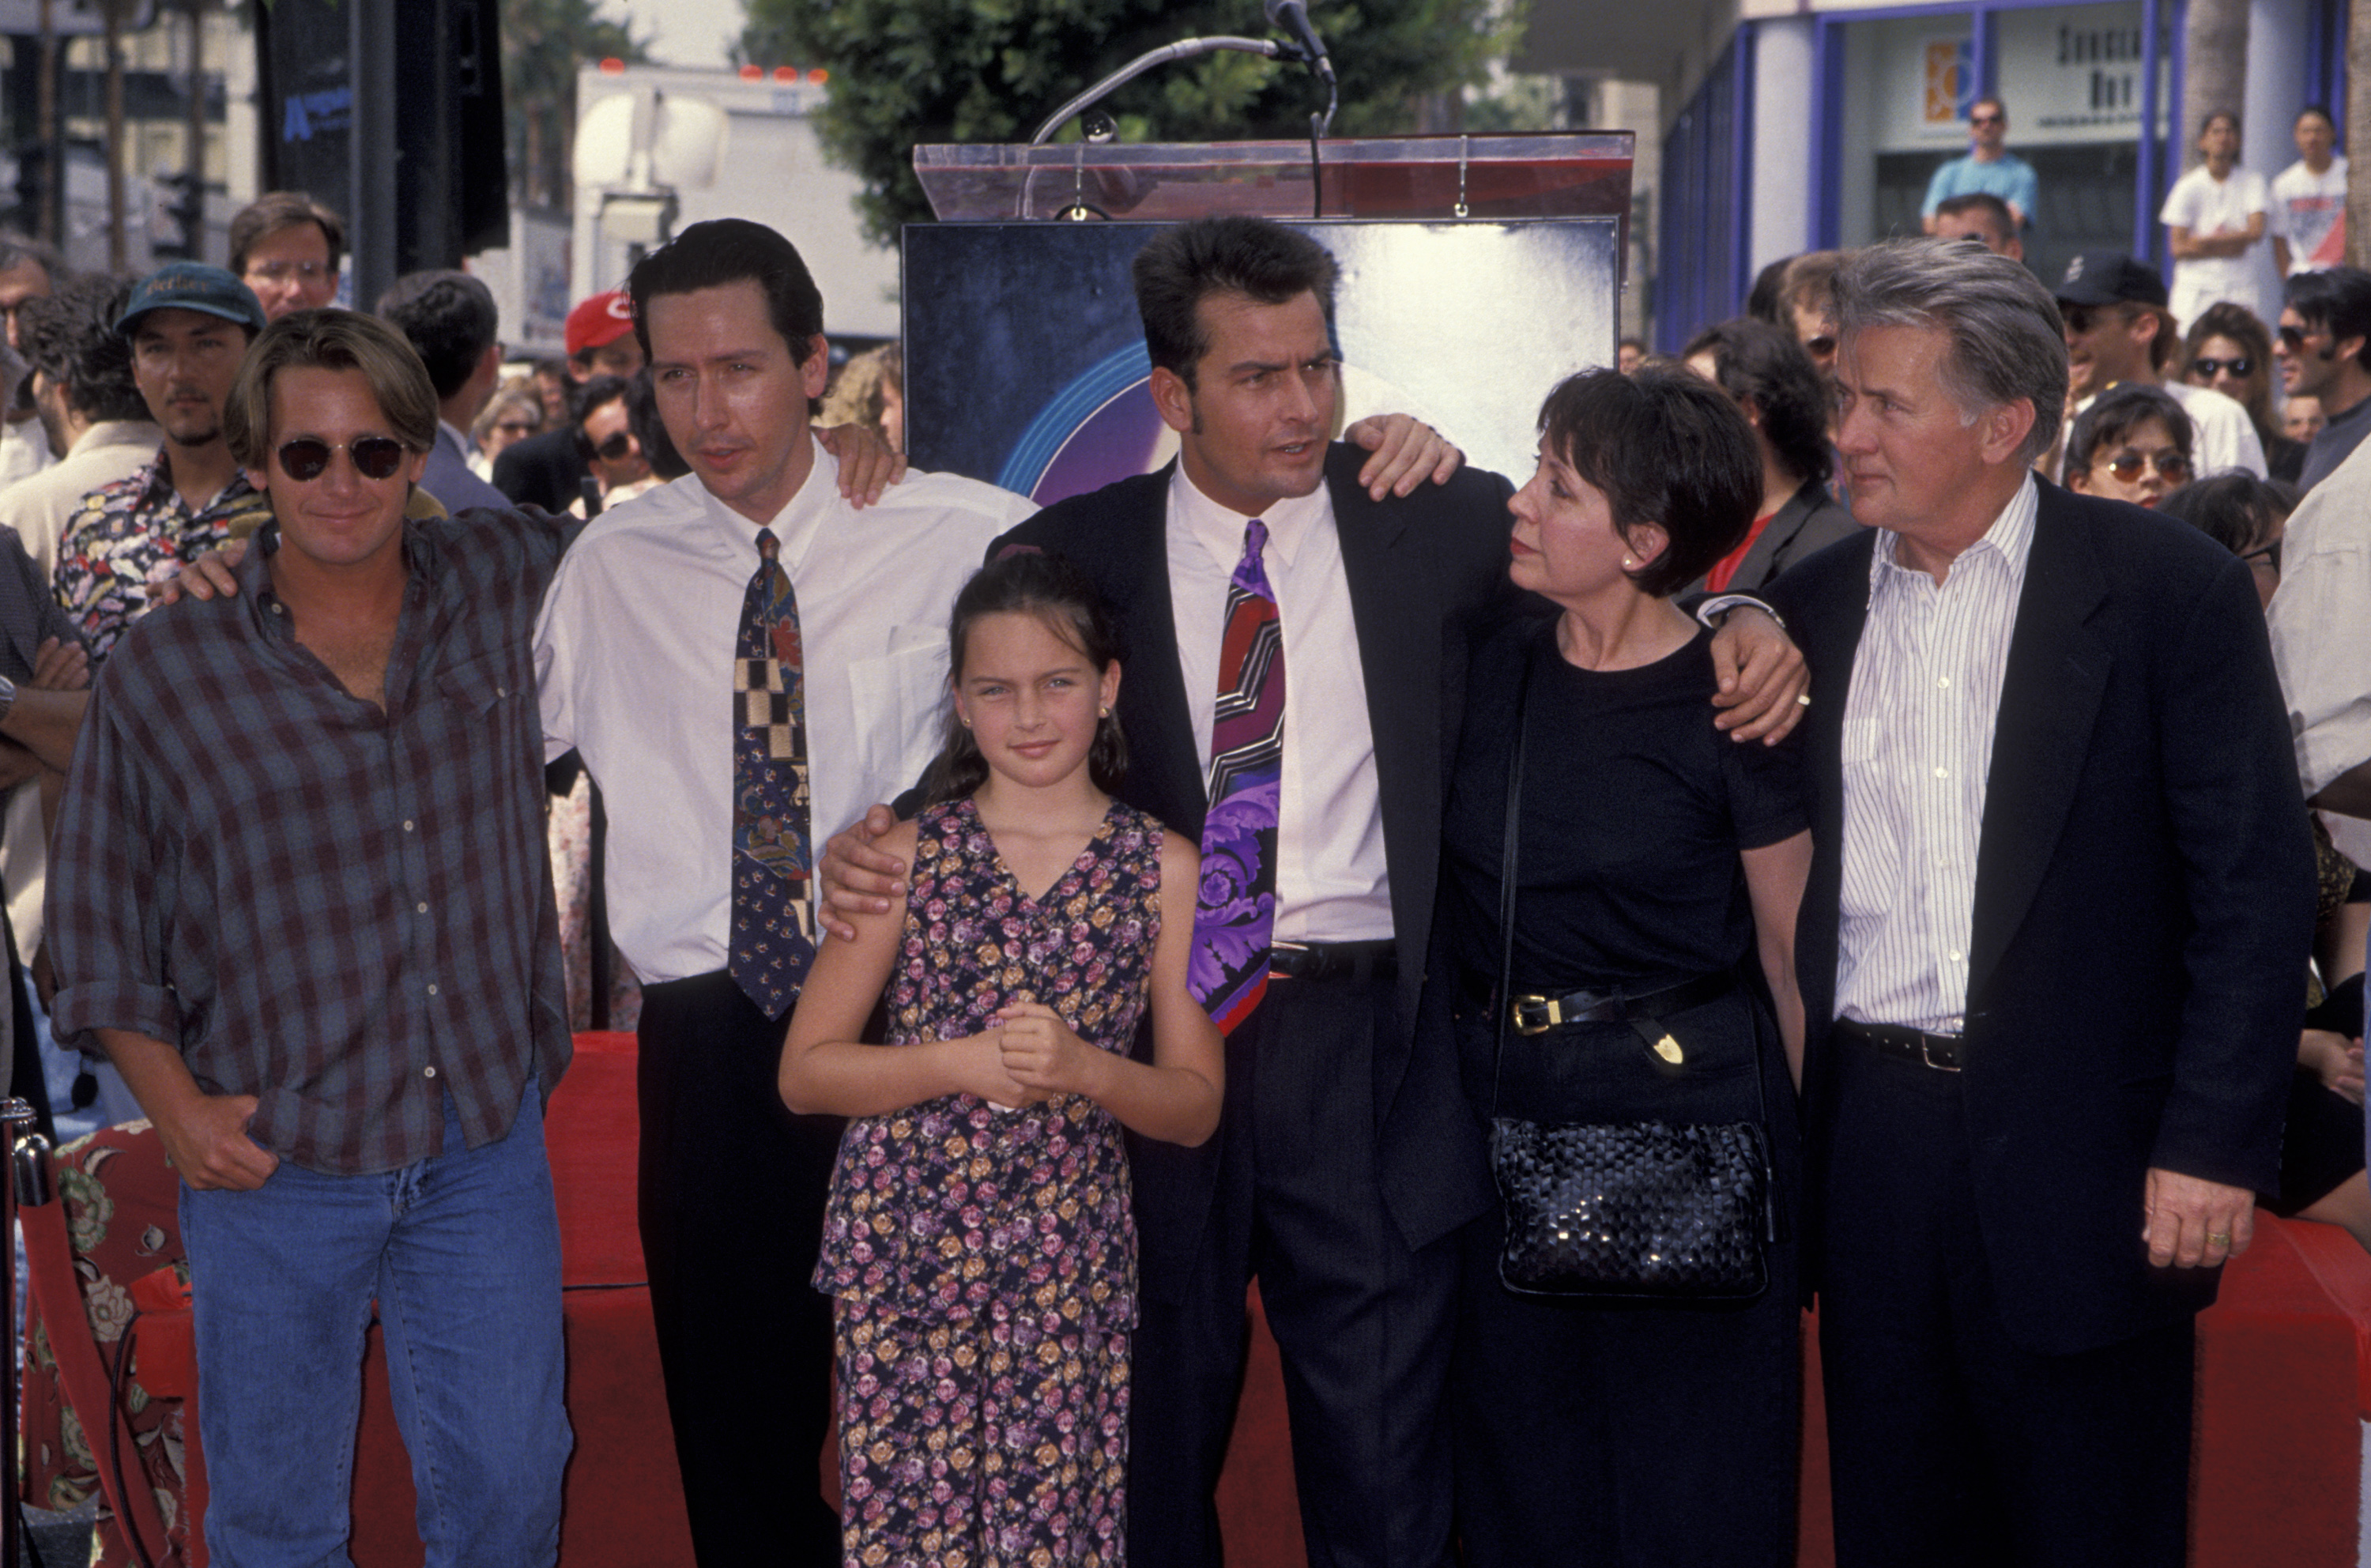 Emilio Estevez, Ramone Estevez, Charlie Sheen, Janet et Martin Sheen lors de la remise d'une étoile à Charlie Sheen sur le Hollywood Walk of Fame le 23 septembre 1994 | Source : Getty Images